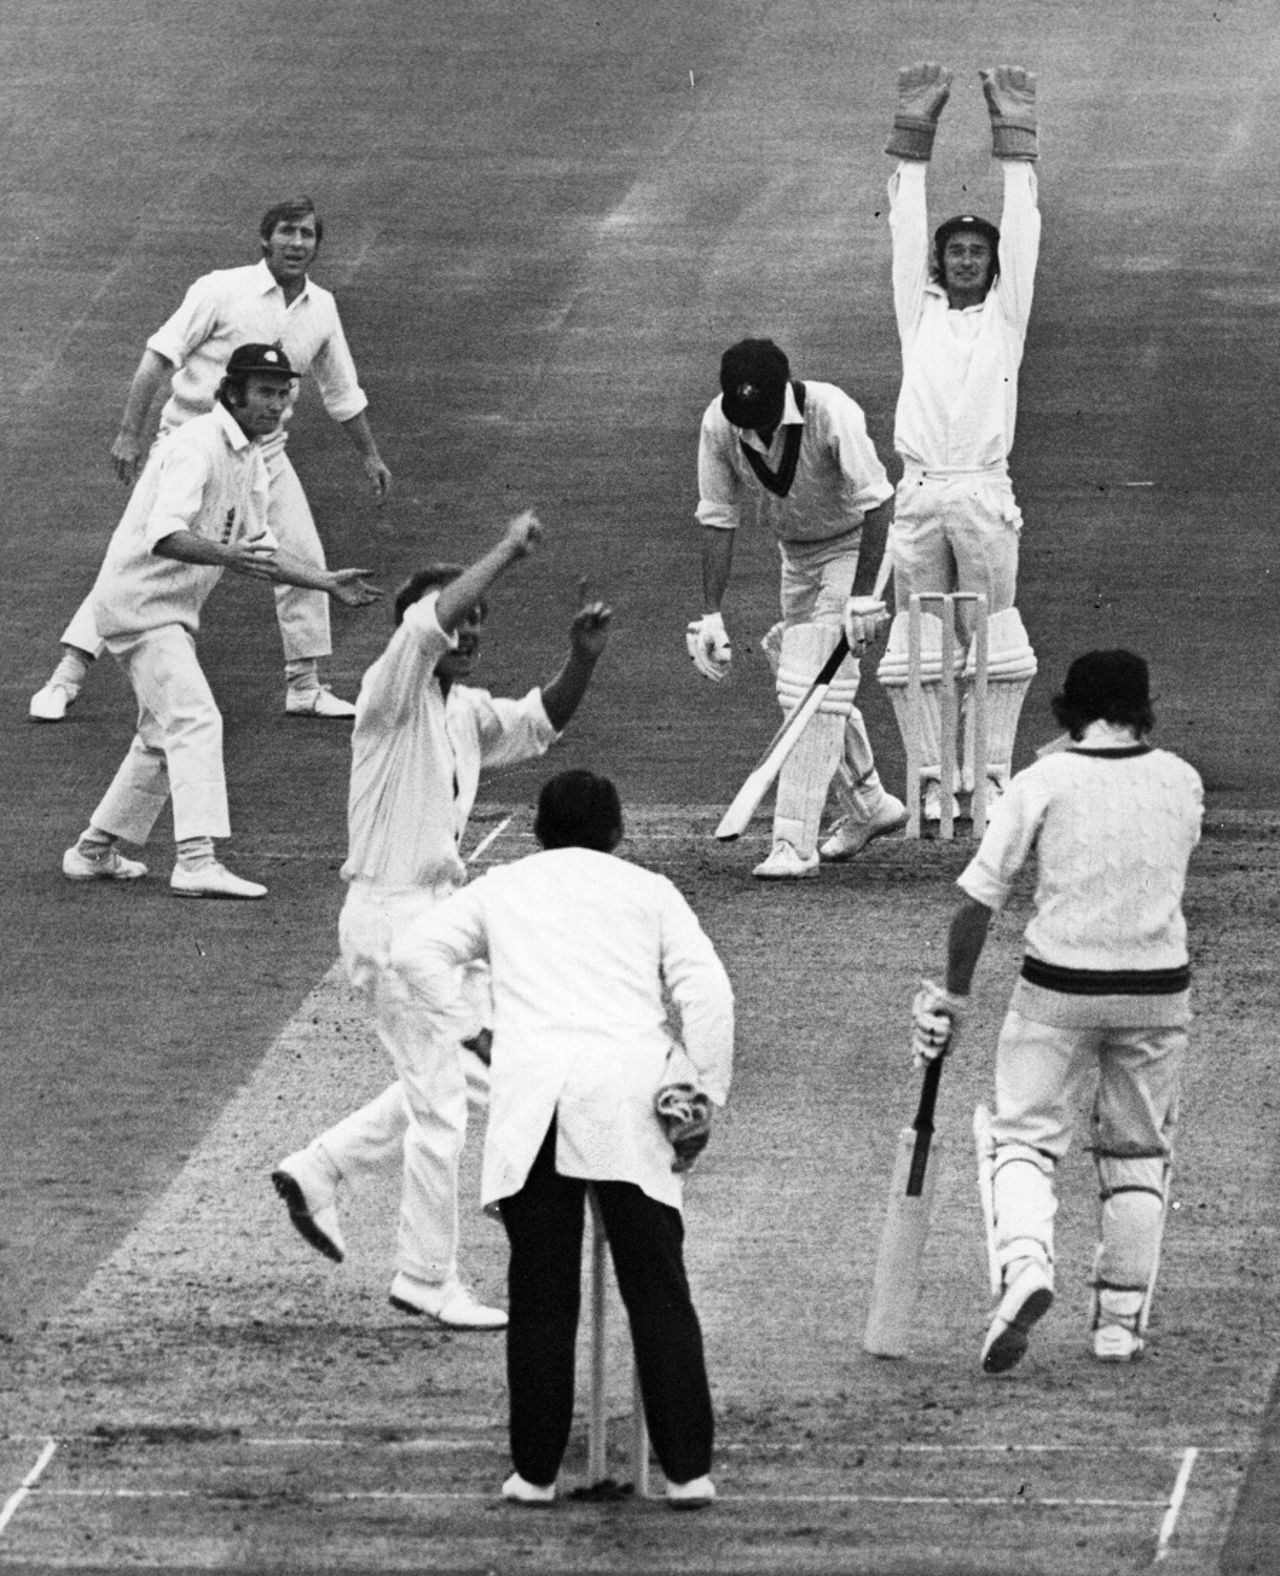 Derek Underwood dismisses Greg Chappell for 12, England v Australia, 4th Test, Headingley, 3rd day, July 29, 1972